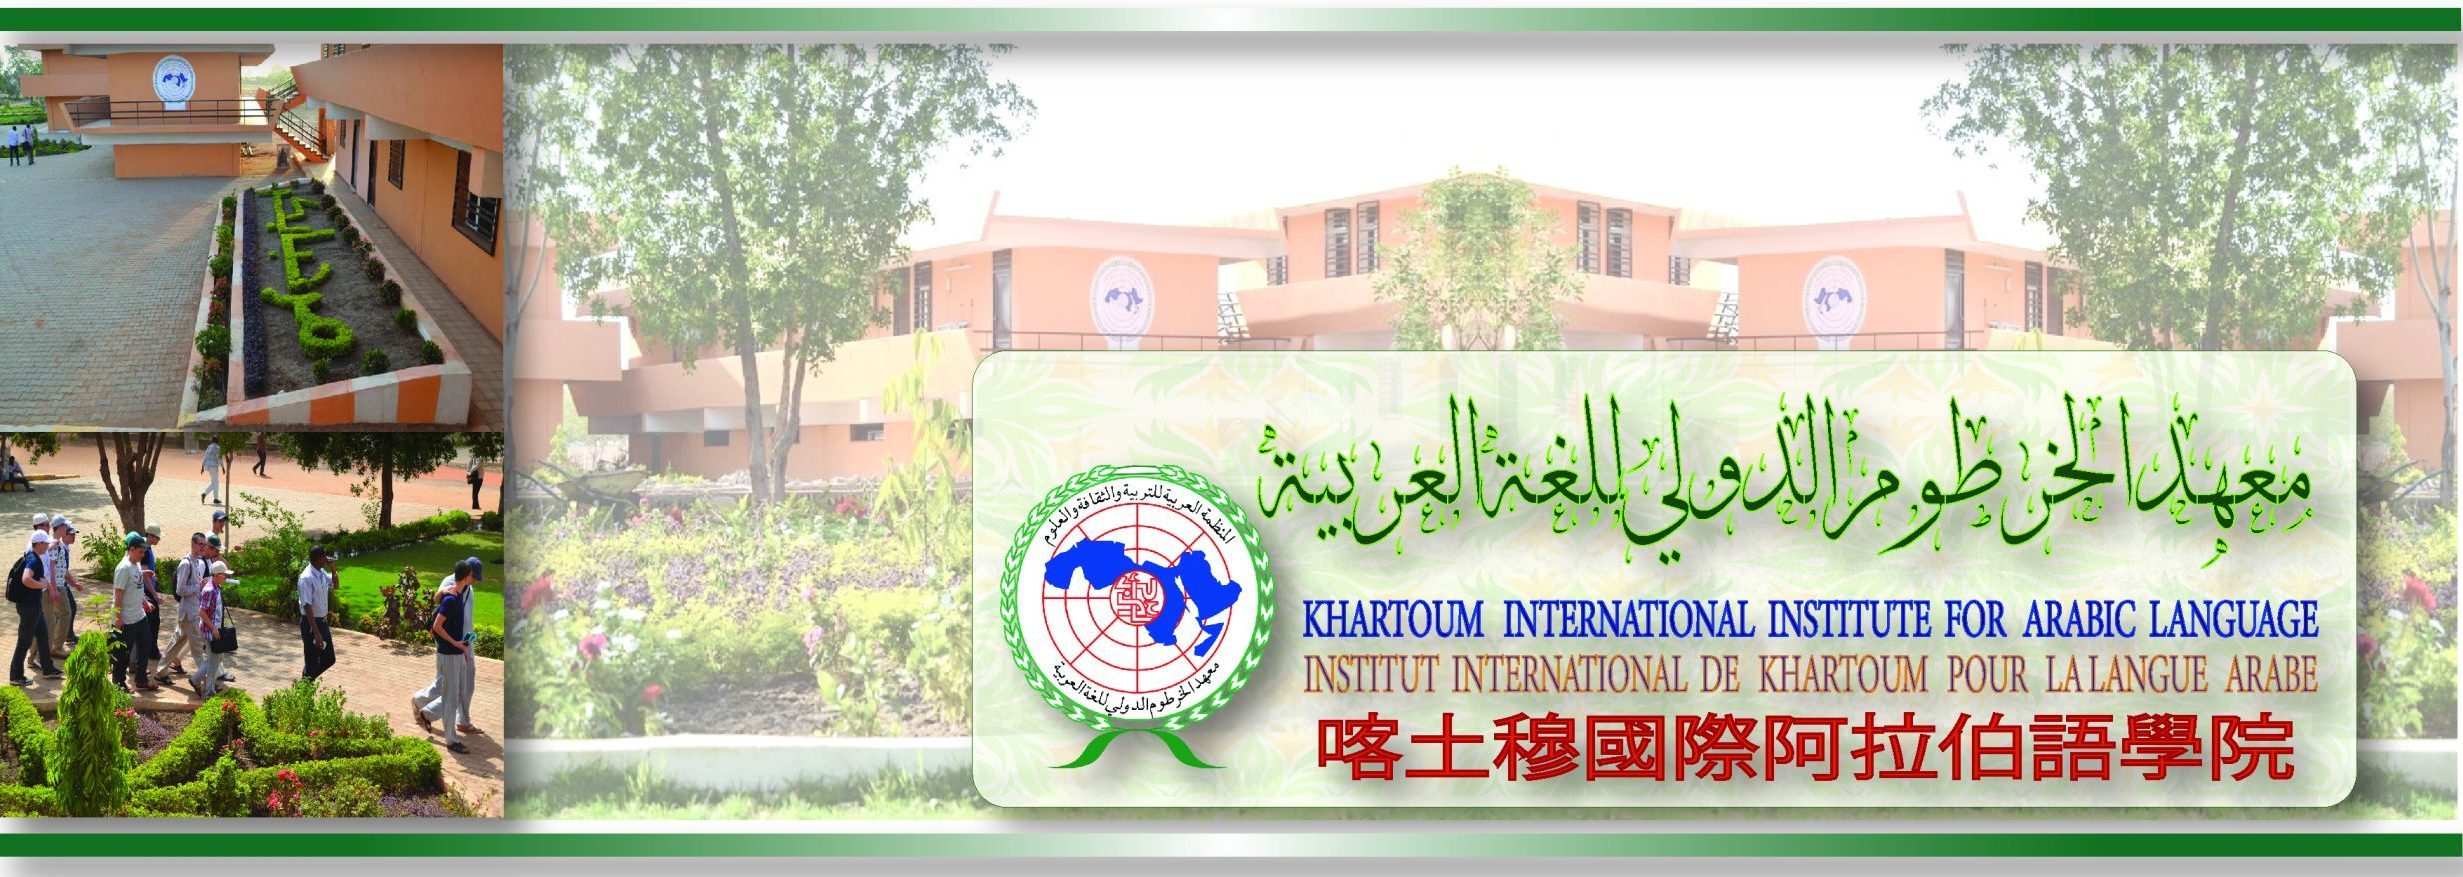 معهد الخرطوم الدولي للغة العربية